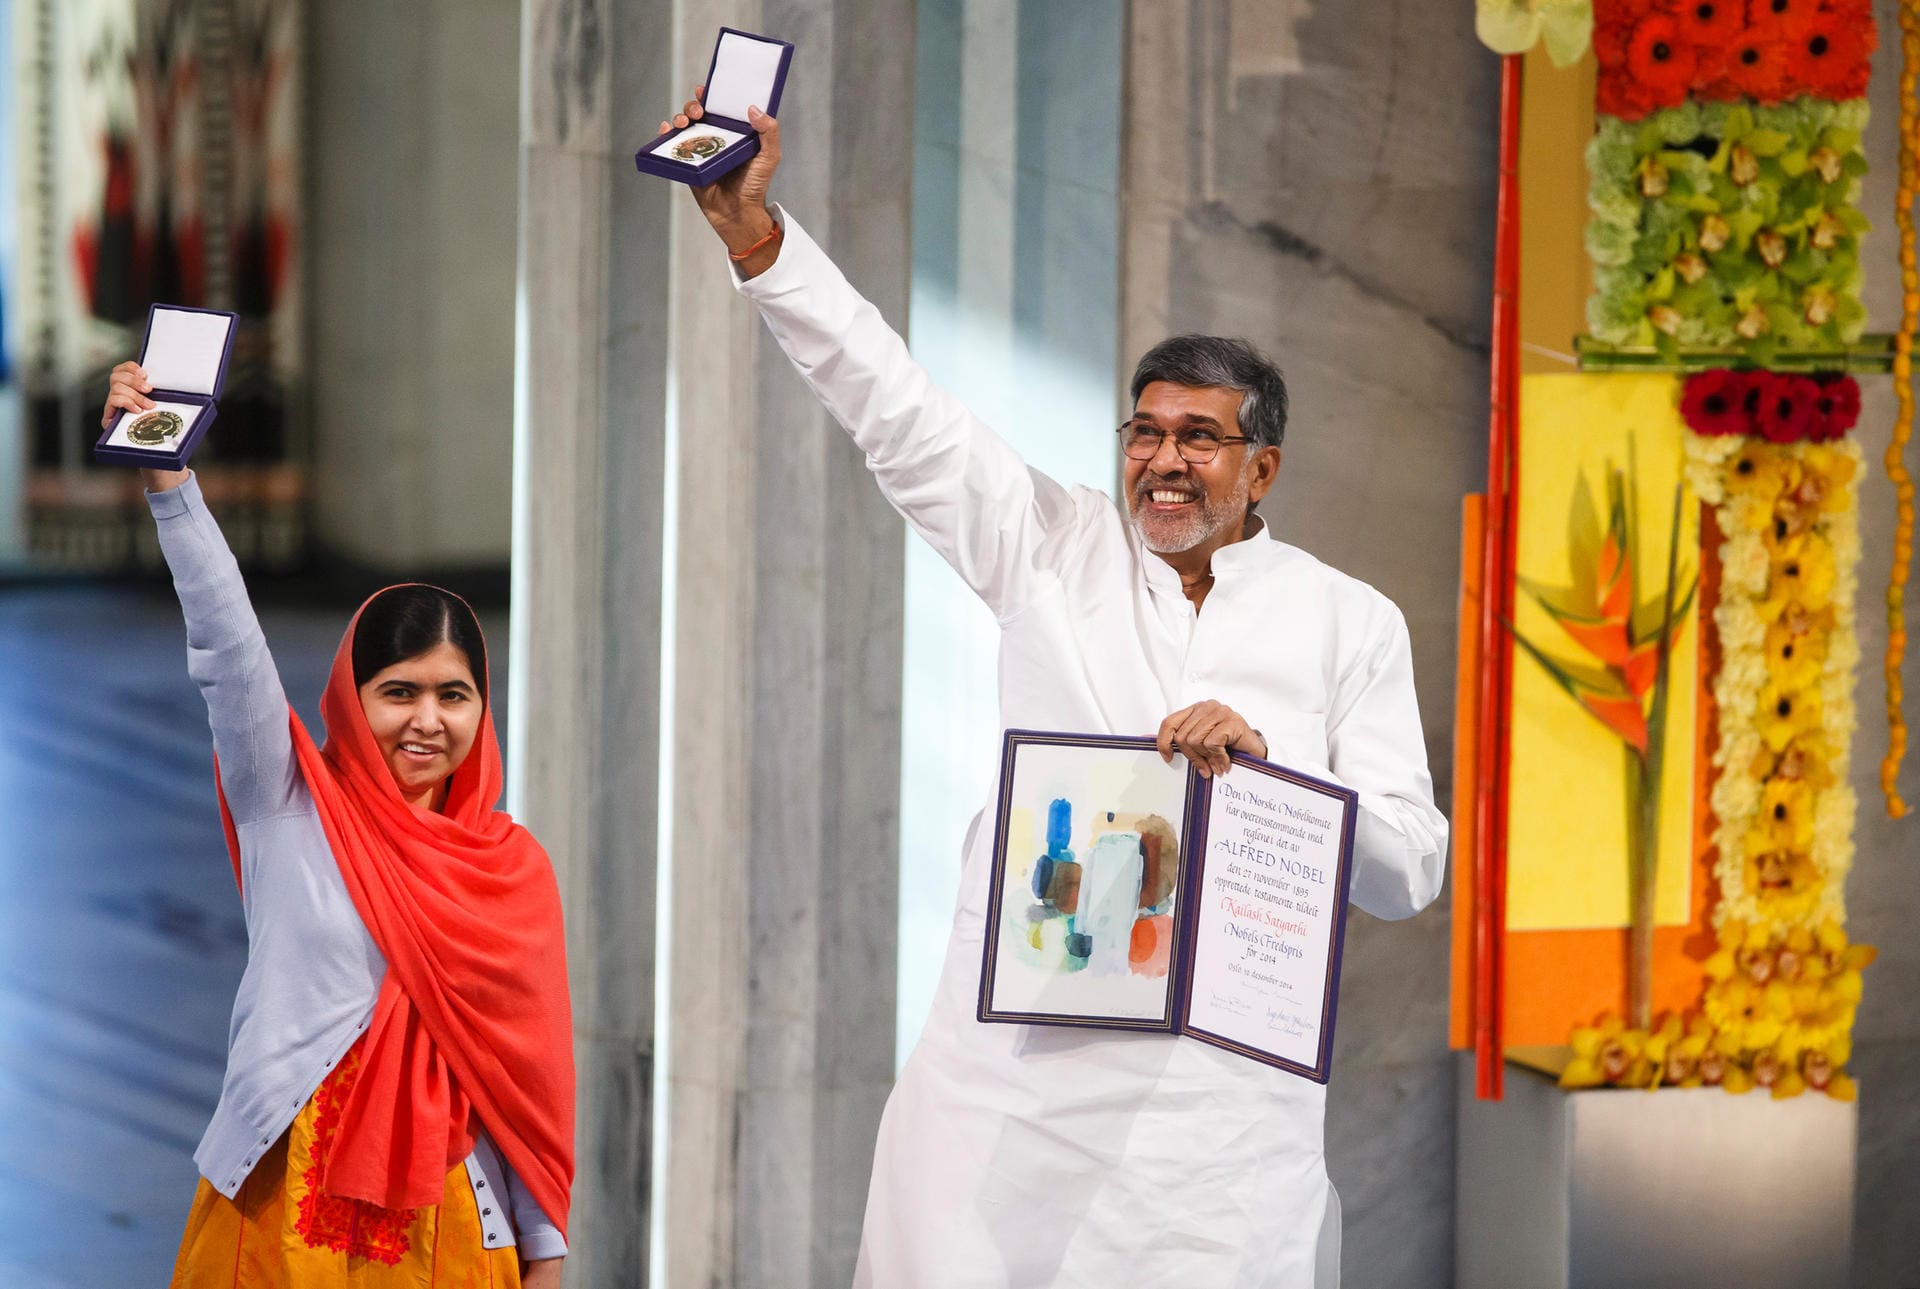 2014 teilen sich Malala Yousafzai (l), eine pakistanische Aktivistin und Kailash Satyarthi, ein indischer Aktivist, den Friedensnobelpreis für ihren Kampf gegen die Unterdrückung von Kindern und Jugendlichen und für das Recht aller Kinder auf Bildung.